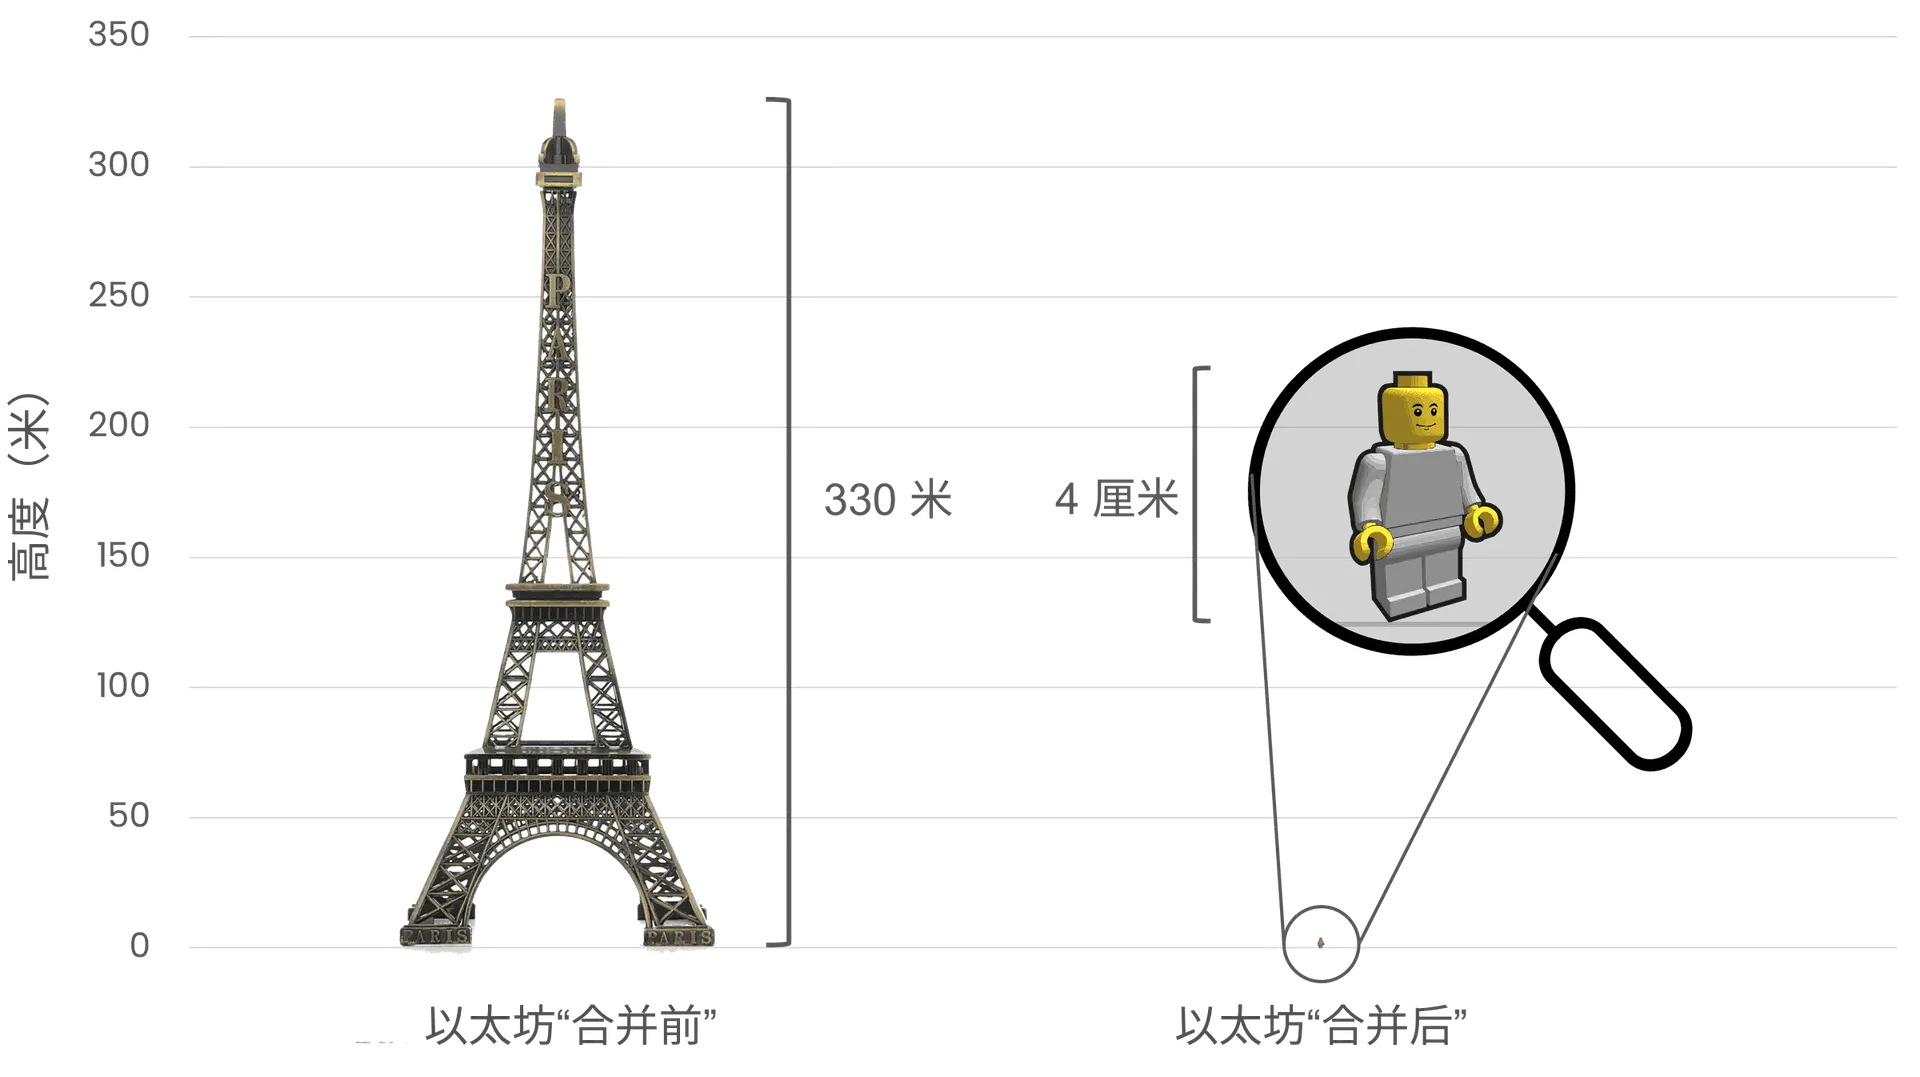 合并前后以太坊能源消耗比较，左侧 330 米高的埃菲尔铁塔表示以太坊合并前的高能耗，右侧 4 厘米高的乐高小人代表以太坊合并后大幅降低的能耗